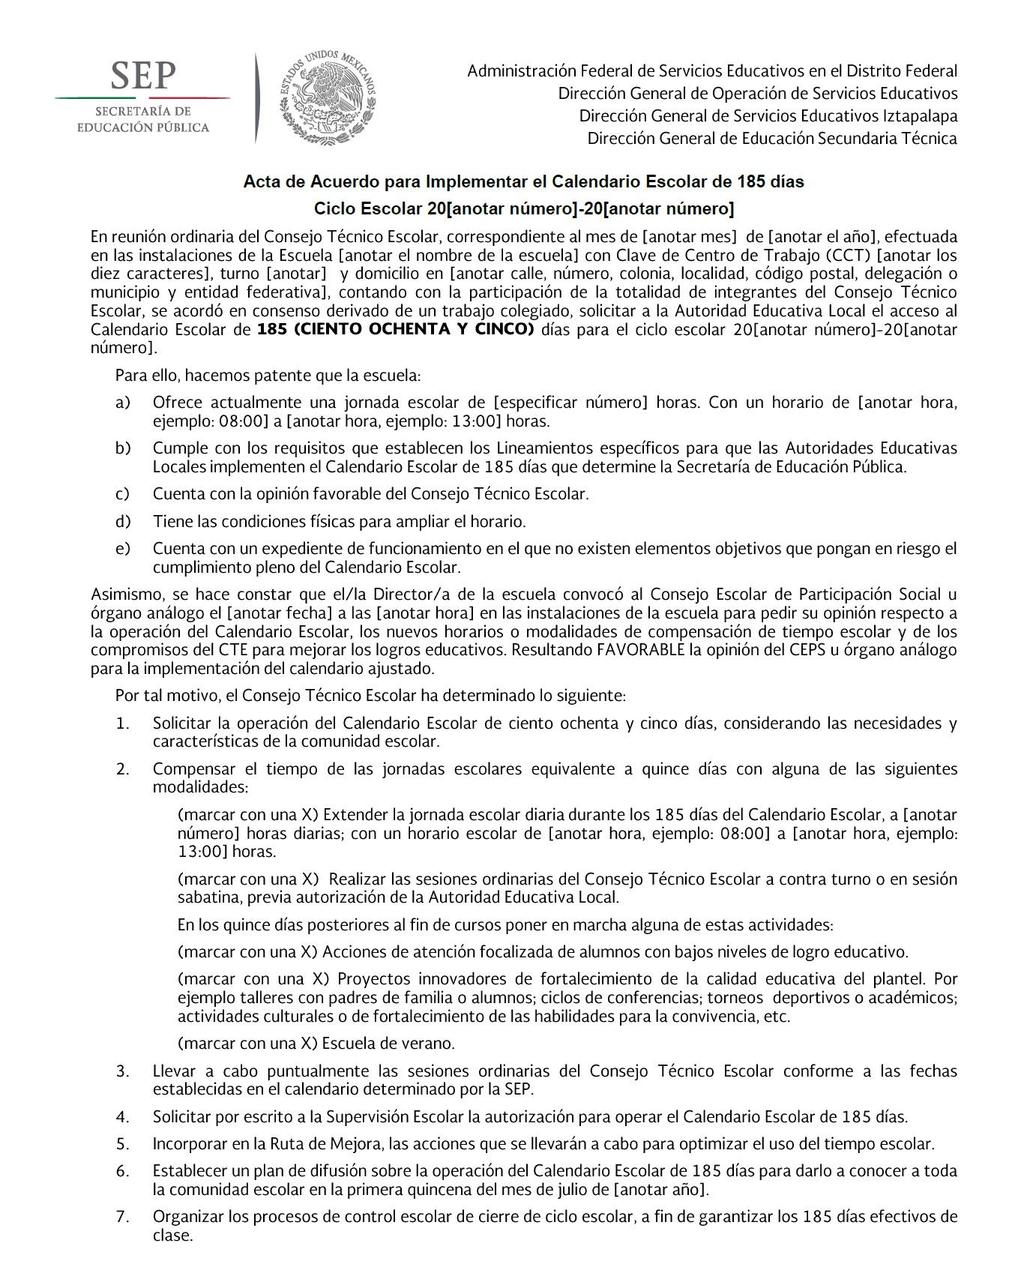 RH-02 ACTA DE ACUERDO PARA IMPLEMENTAR EL CALENDARIO